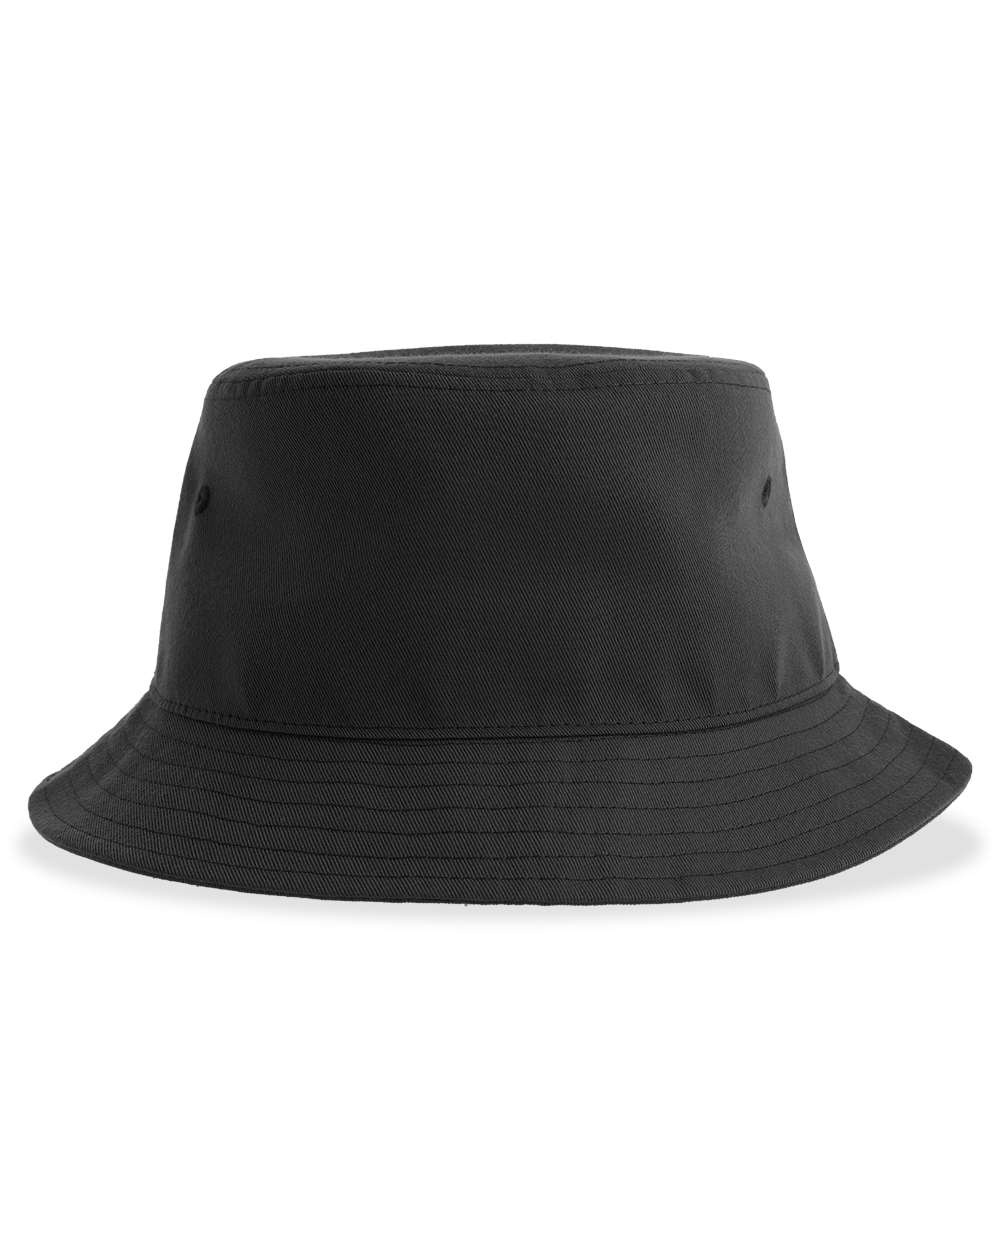 Atlantis Headwear® Sustainable Bucket Hat